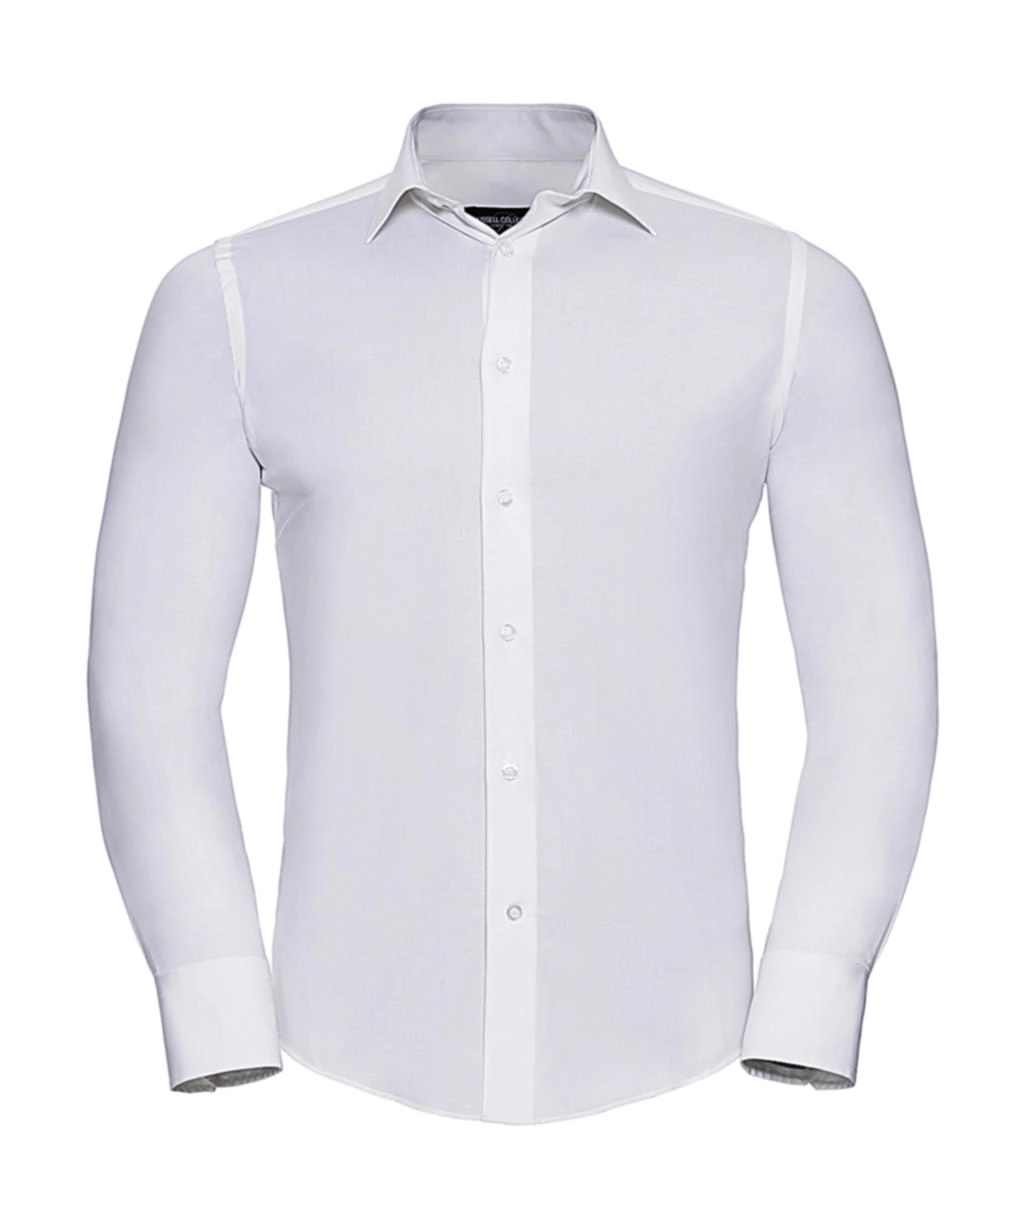 Fitted Stretch Shirt LS zum Besticken und Bedrucken in der Farbe White mit Ihren Logo, Schriftzug oder Motiv.